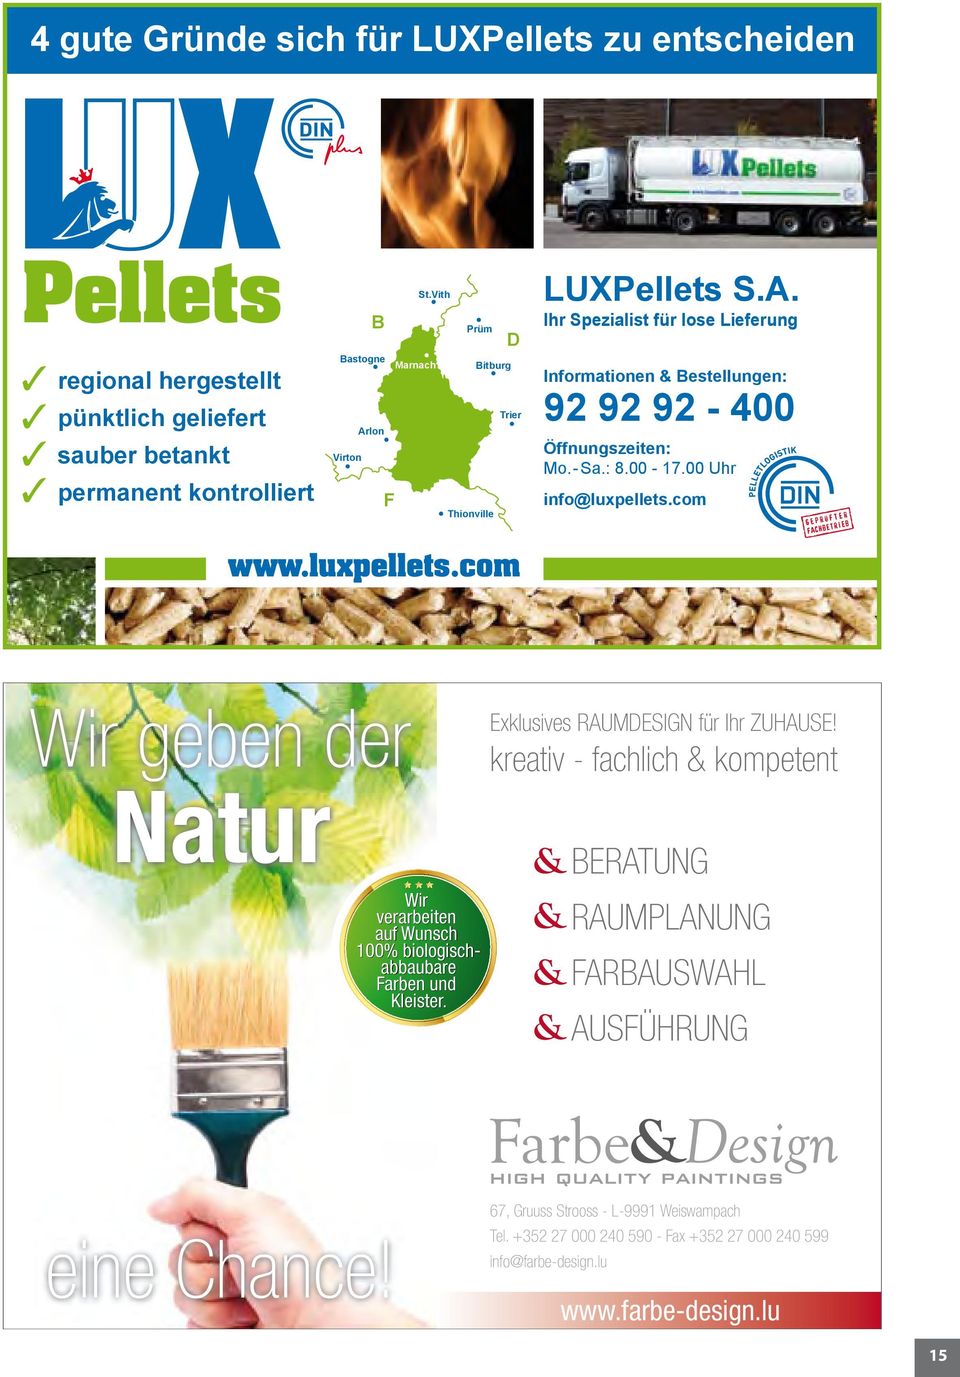 00 Uhr info@luxpellets.com www.luxpellets.com Wir geben der Natur Wir verarbeiten auf Wunsch 100% biologischabbaubare Farben und Kleister. Exklusives RAUMDESIGN für Ihr ZUHAUSE!